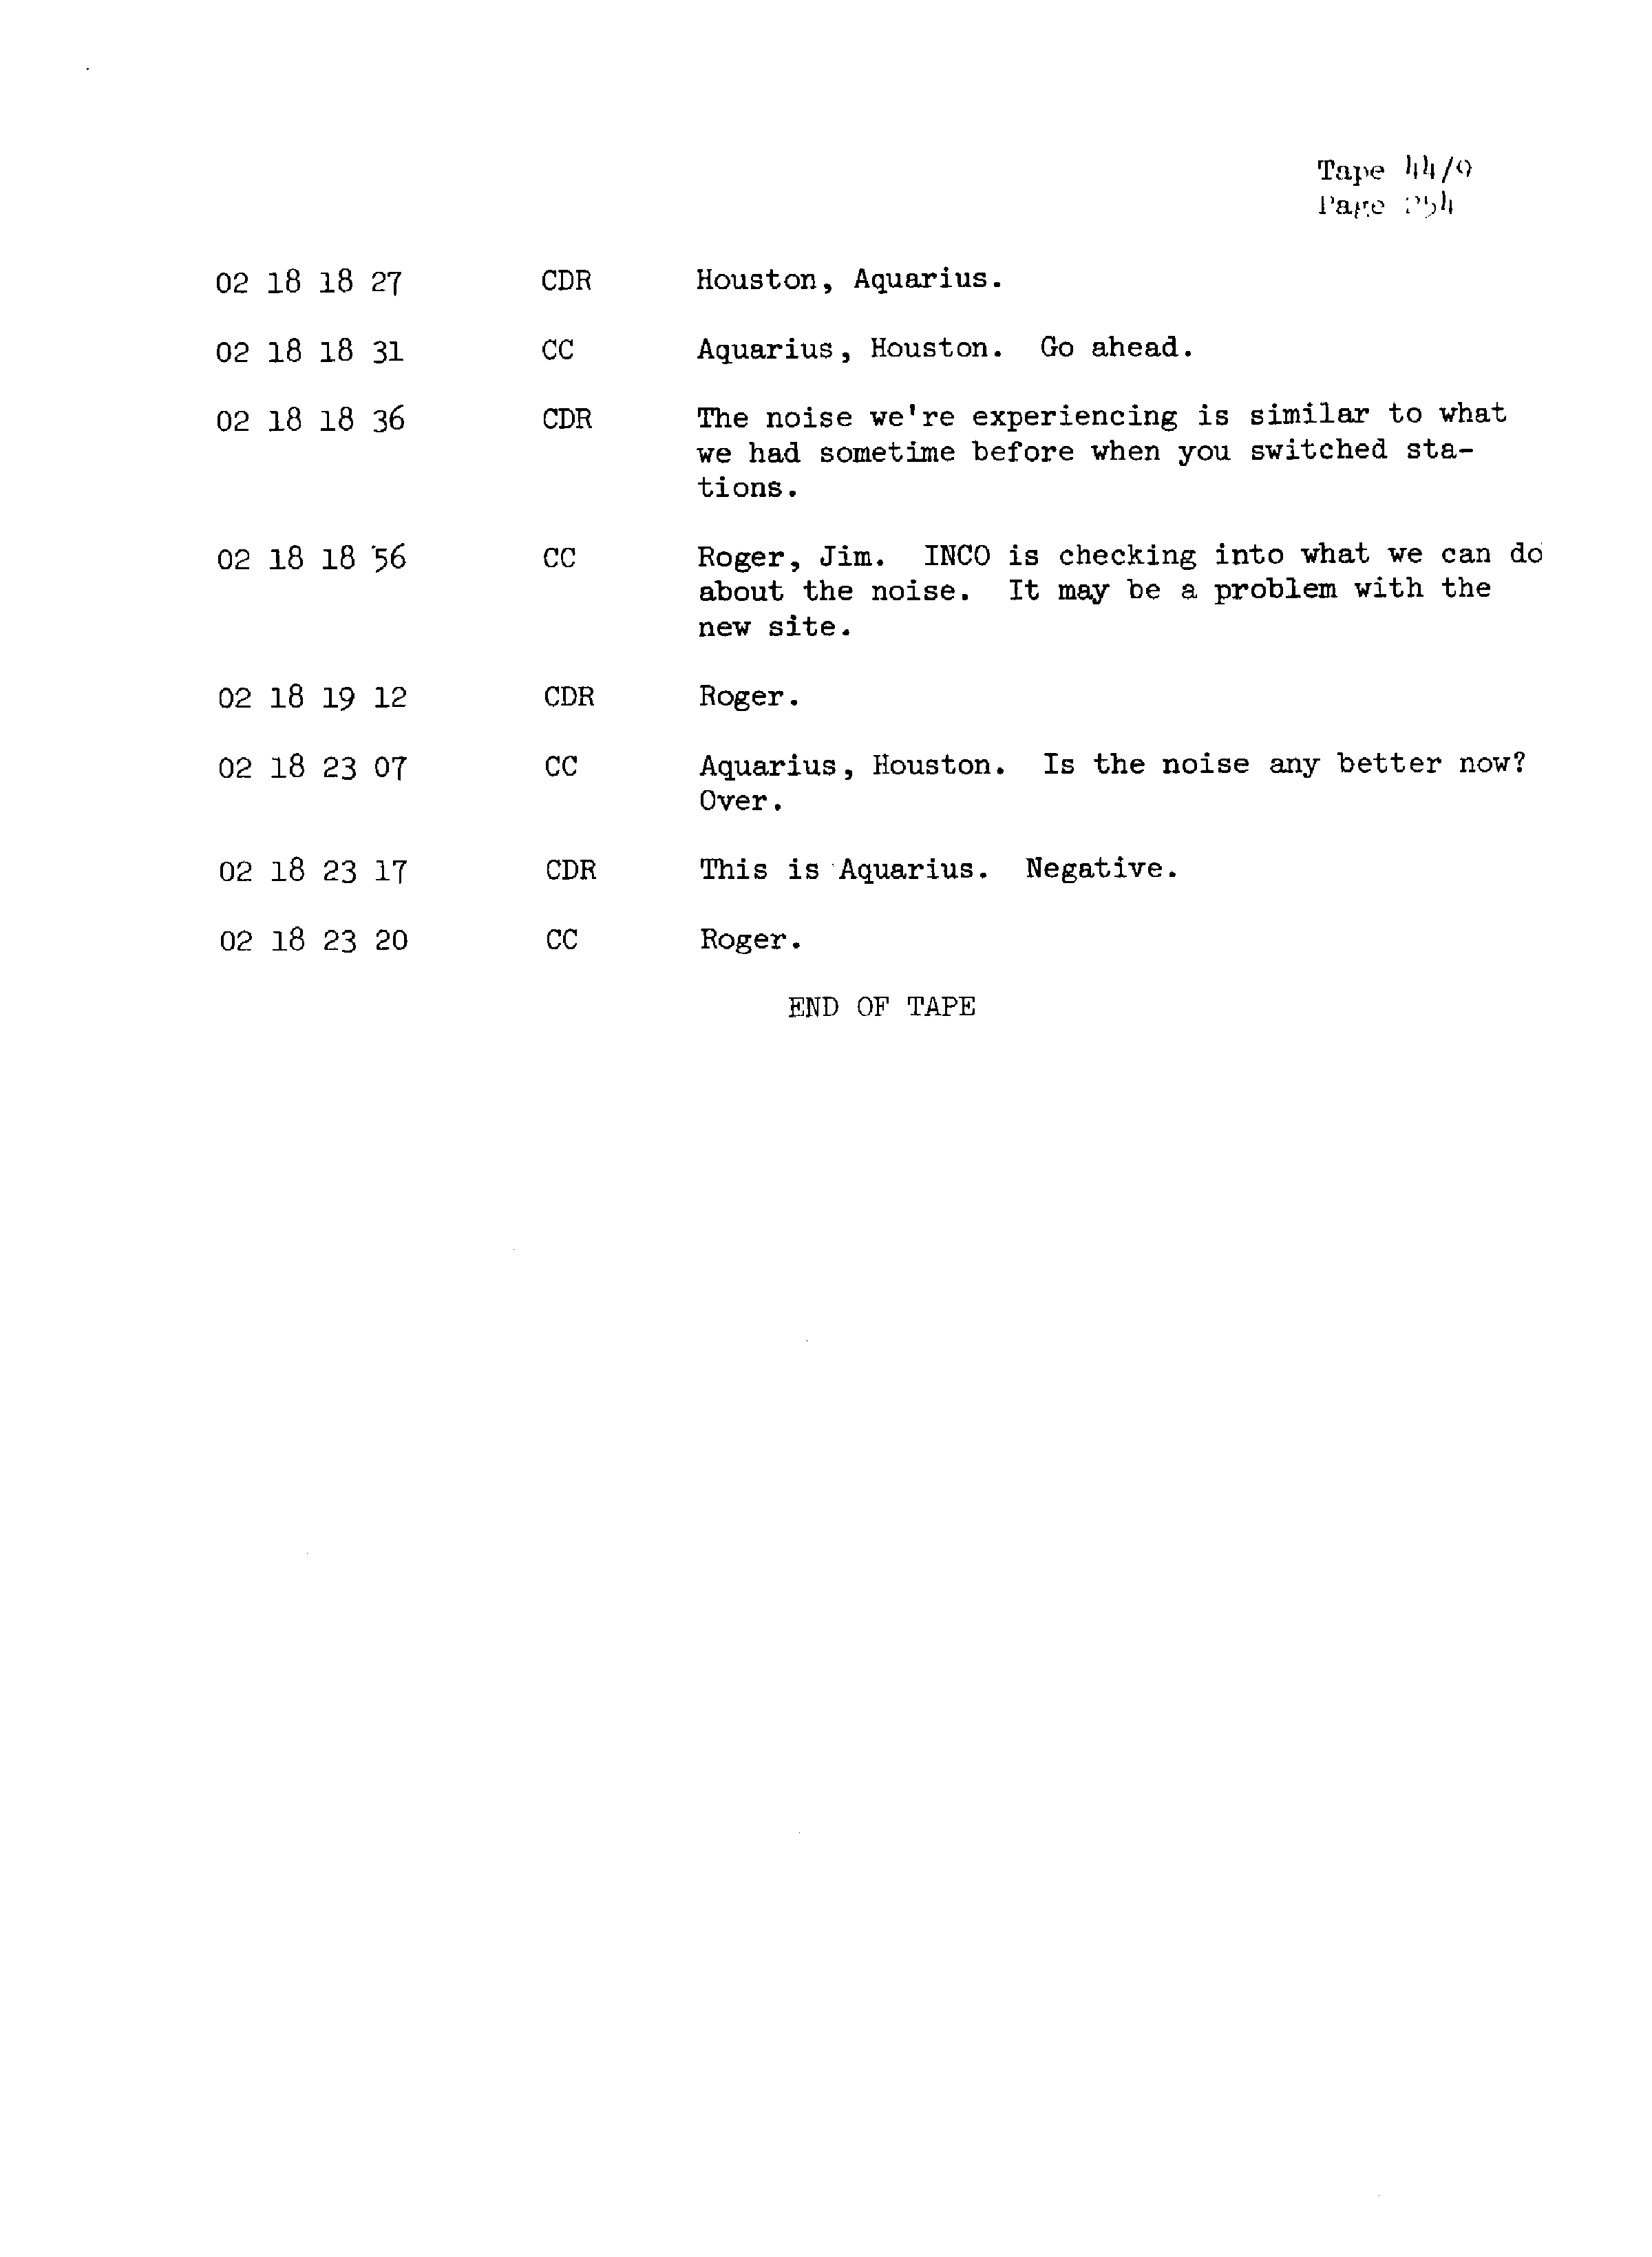 Page 261 of Apollo 13’s original transcript